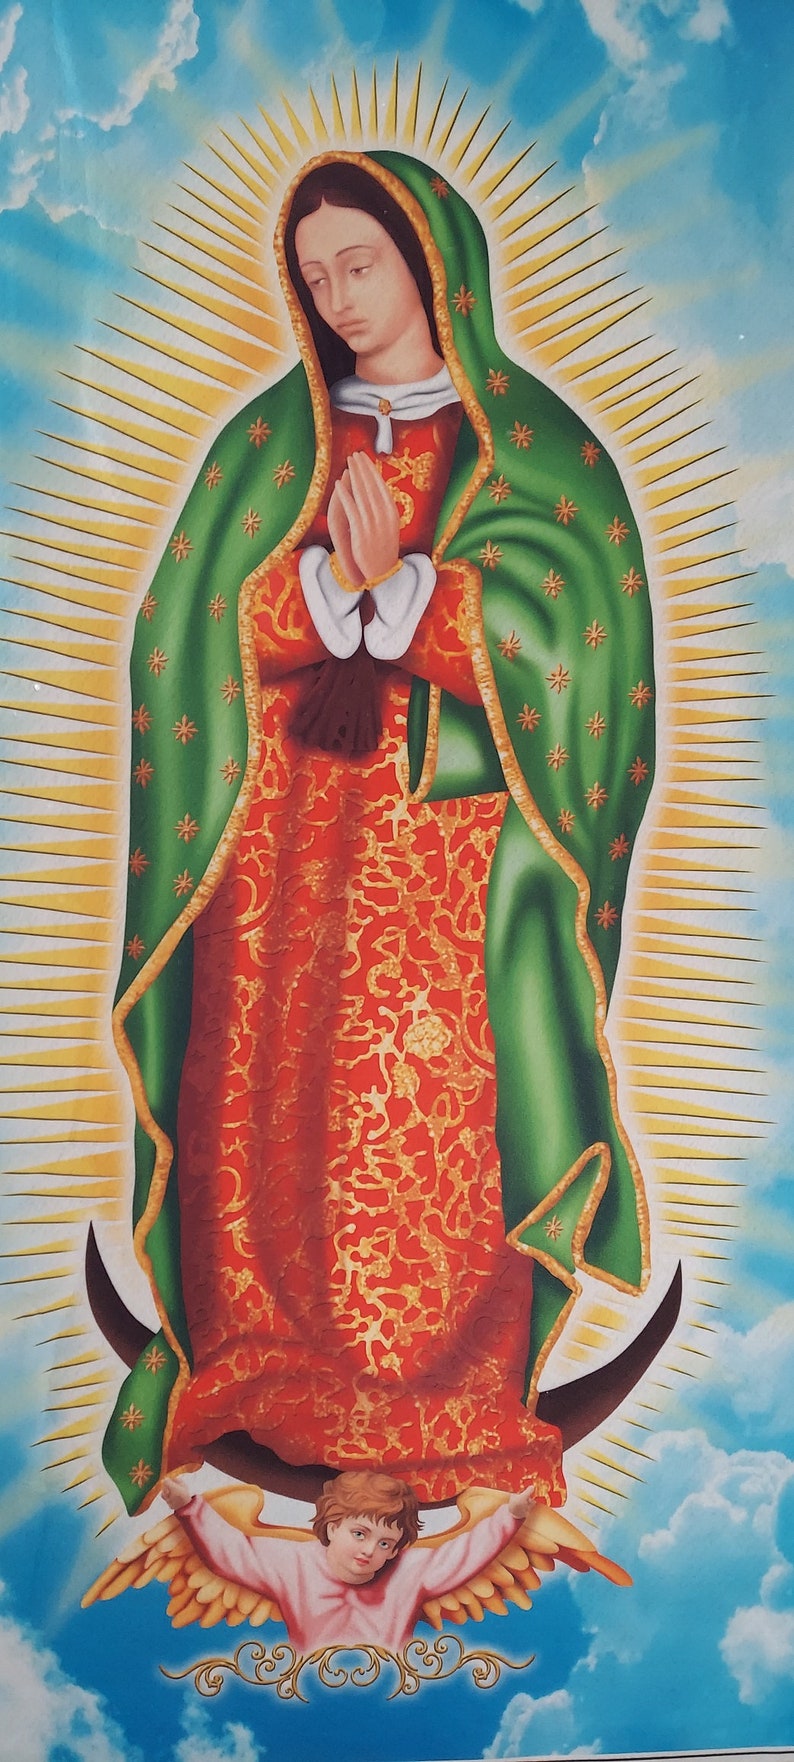 La Virgen de Guadalupe, La Virgen Maria, Our Lady Guadalupe, Virgin Mary , big Virgin Mary art canvas, Our lady of Guadalupe poster image 5